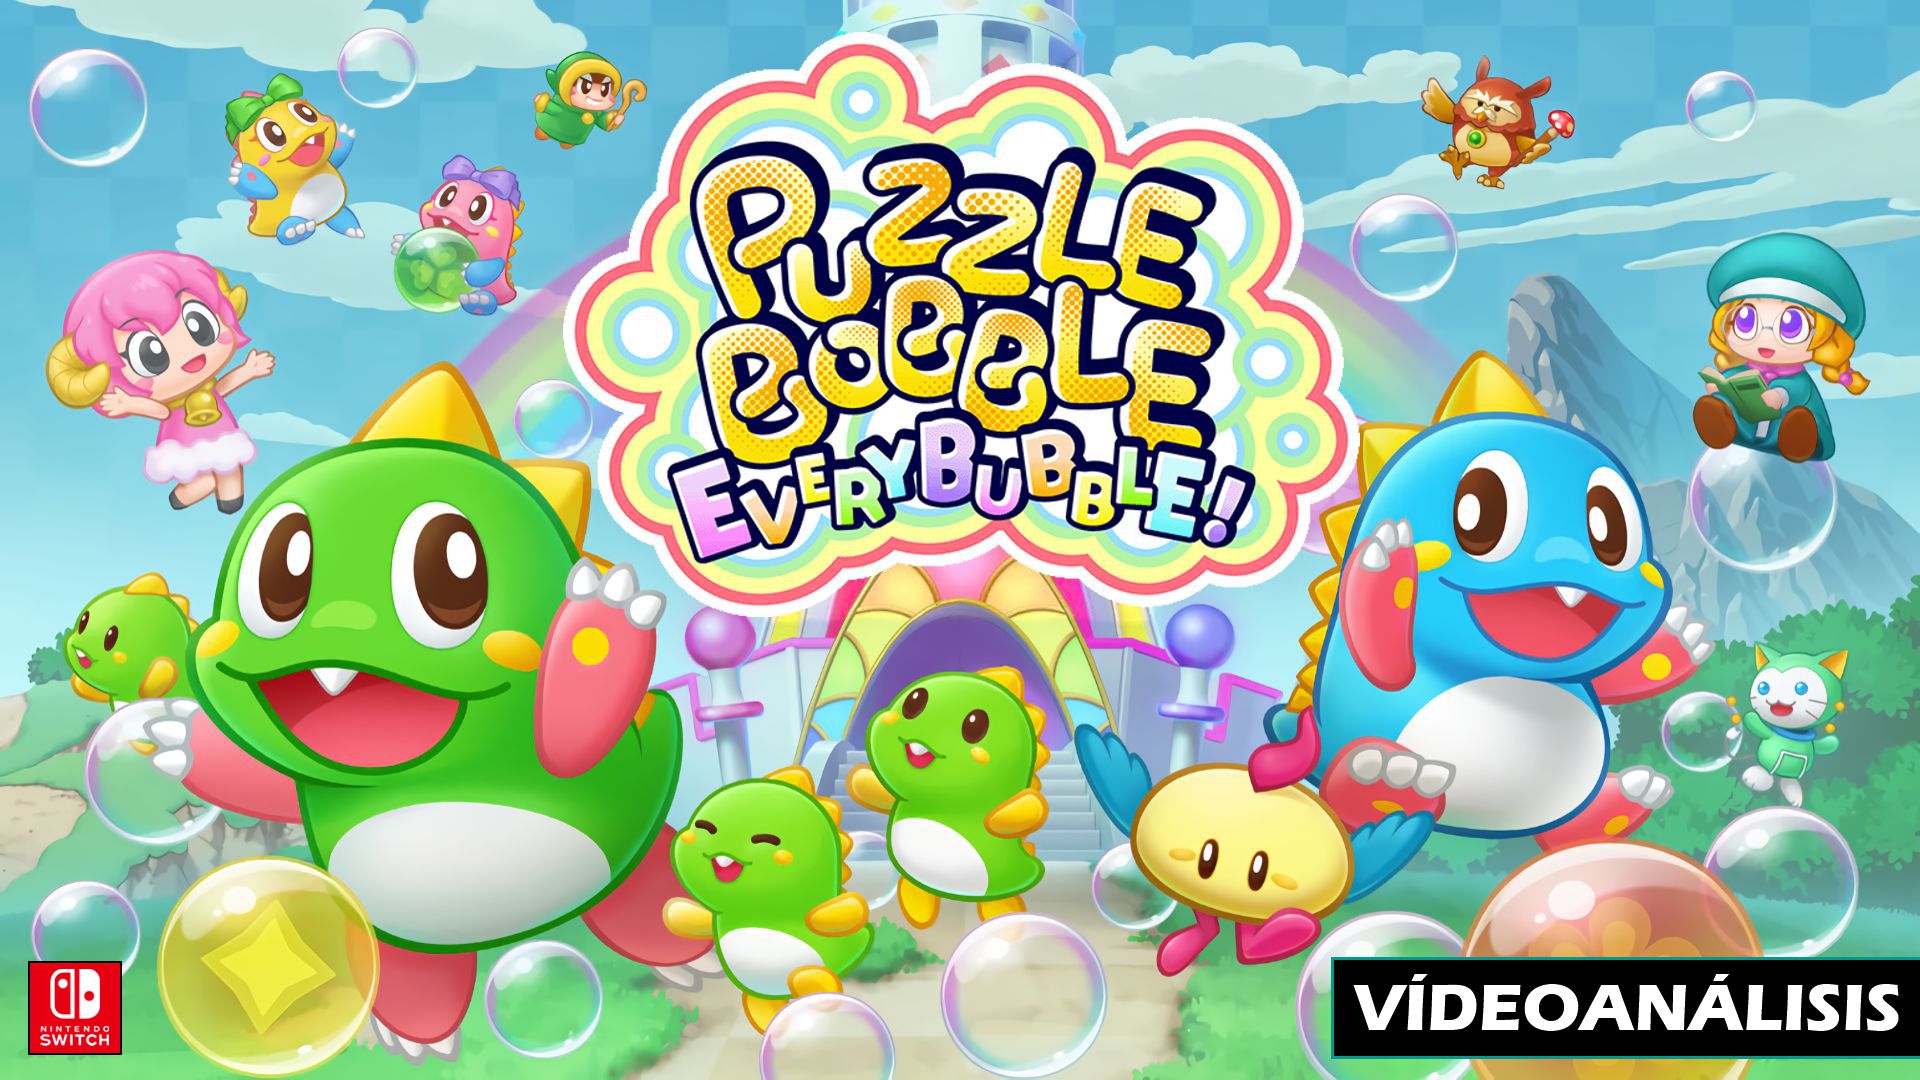 Vídeo análisis de Puzzle Bobble Everybubble!